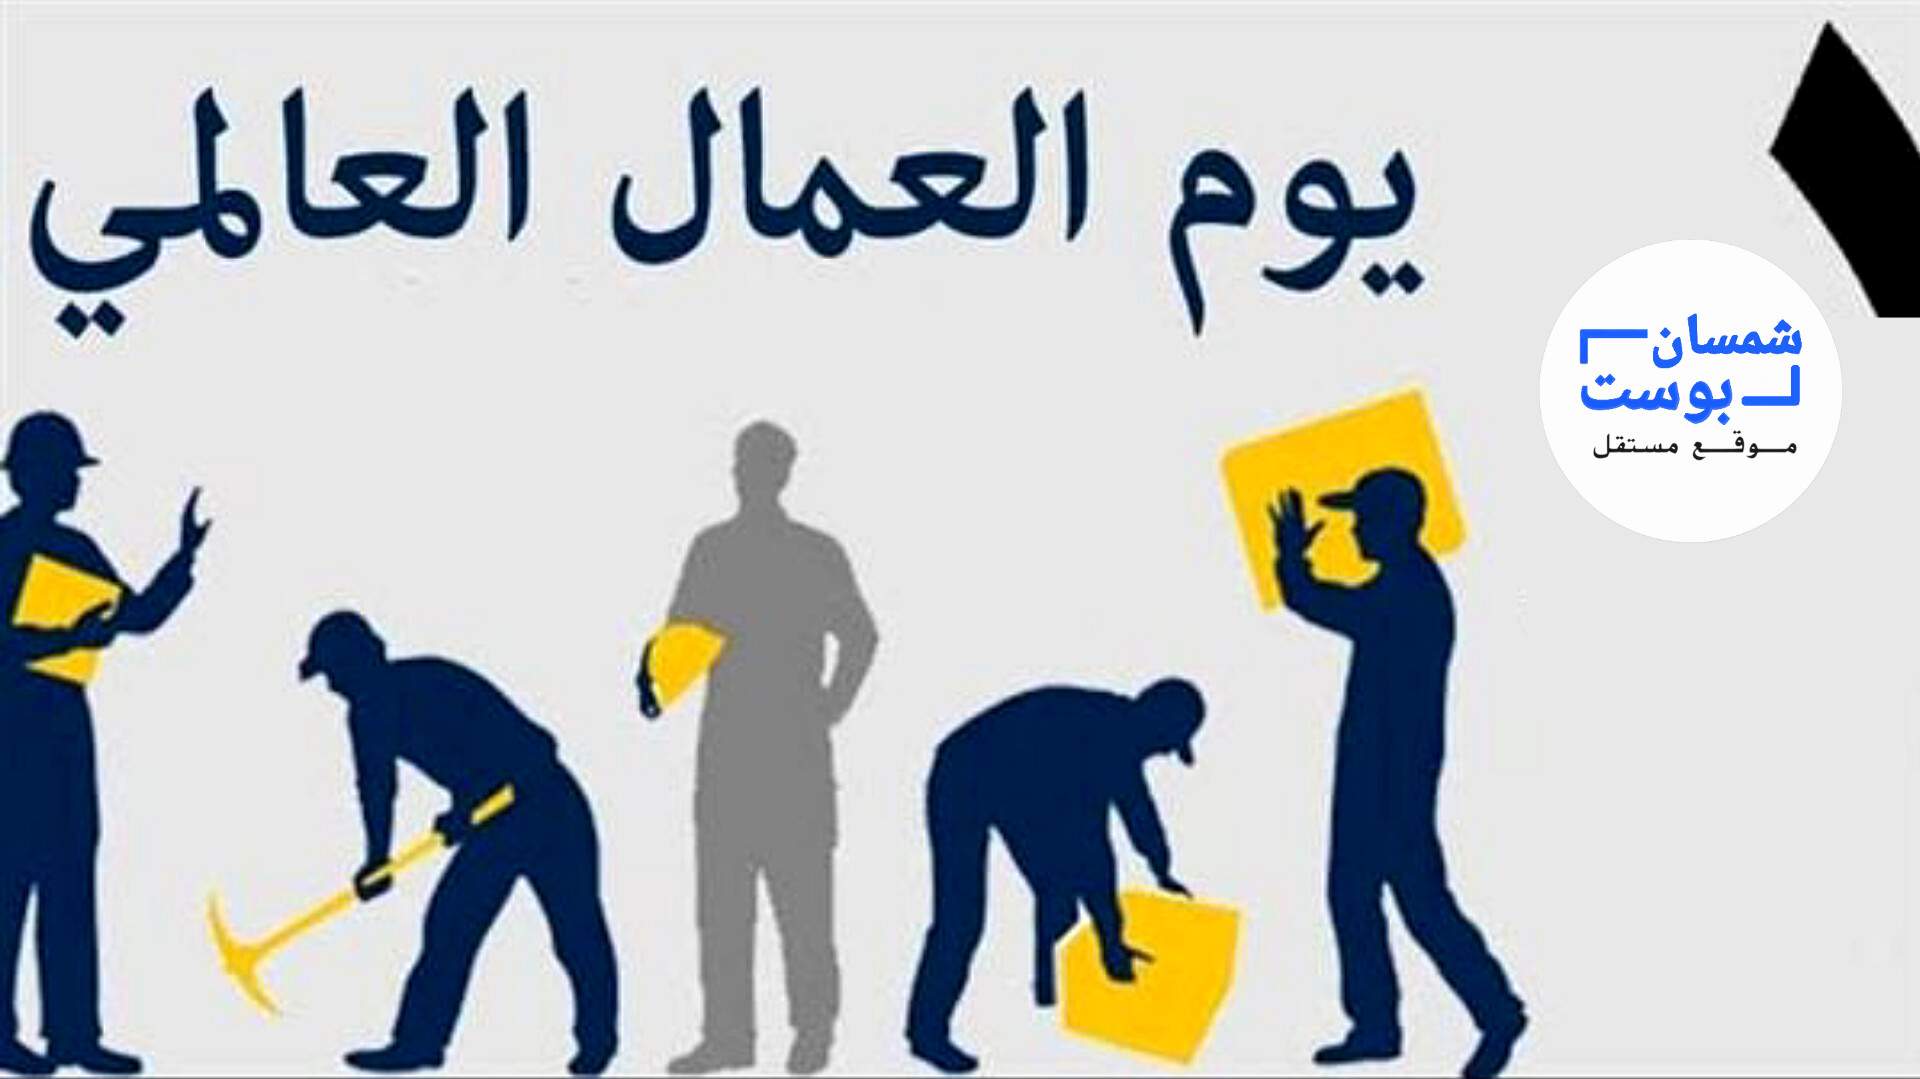 رئيس تحرير “شمسان بوست ” يقدم التهنئة للعمال اليمنيين بمناسبة عيدهم العالمي